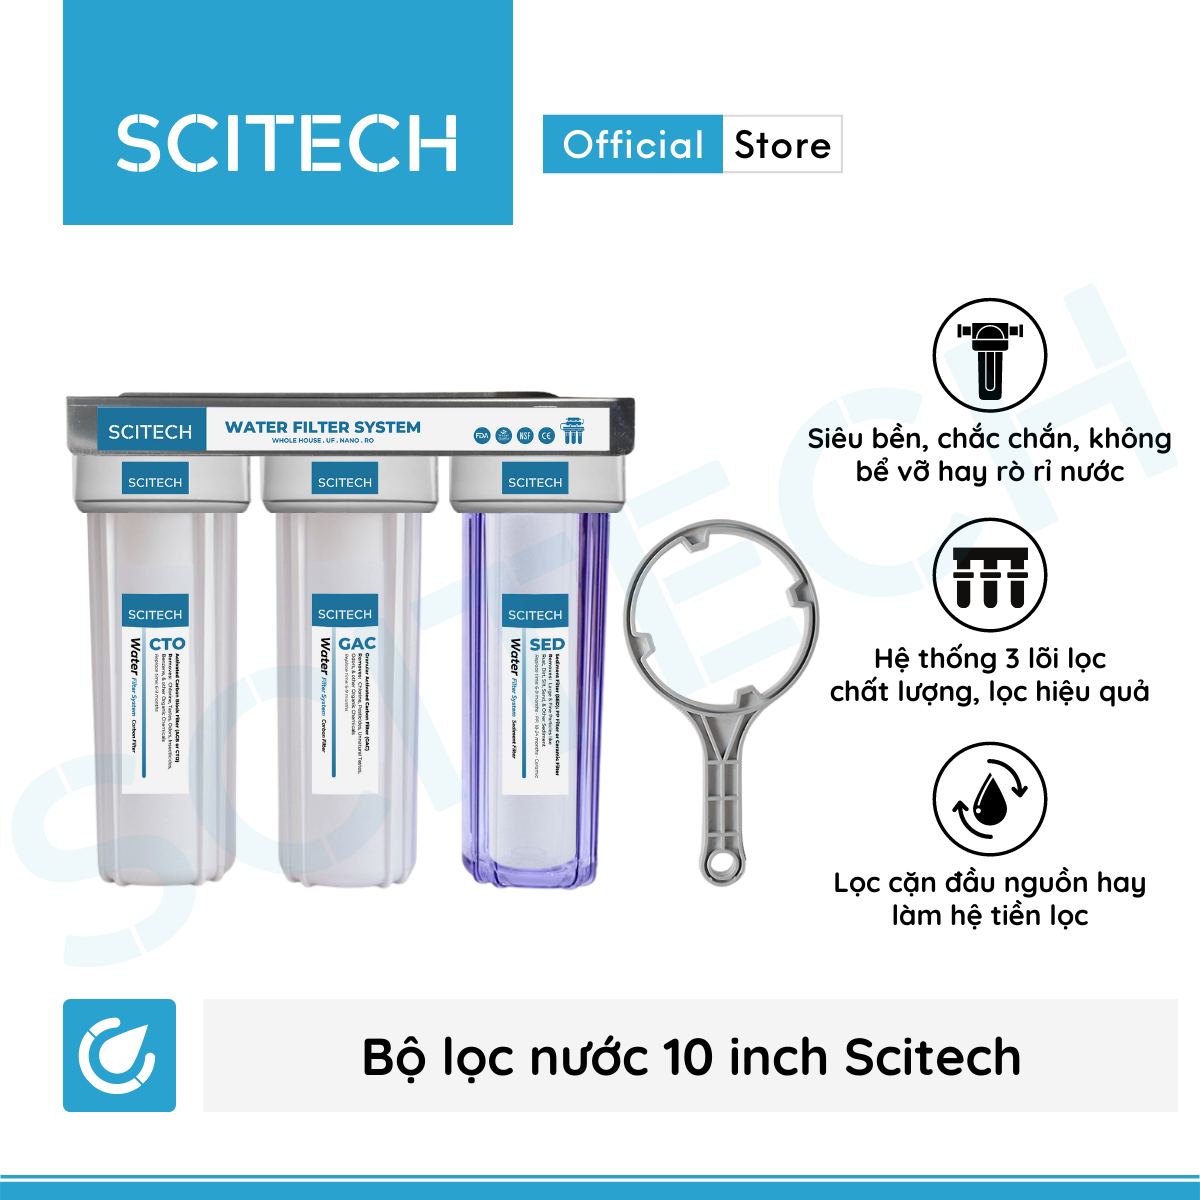 Bộ lọc nước thô đầu nguồn 3 cấp lọc 10 inch by Scitech - Hàng chính hãng